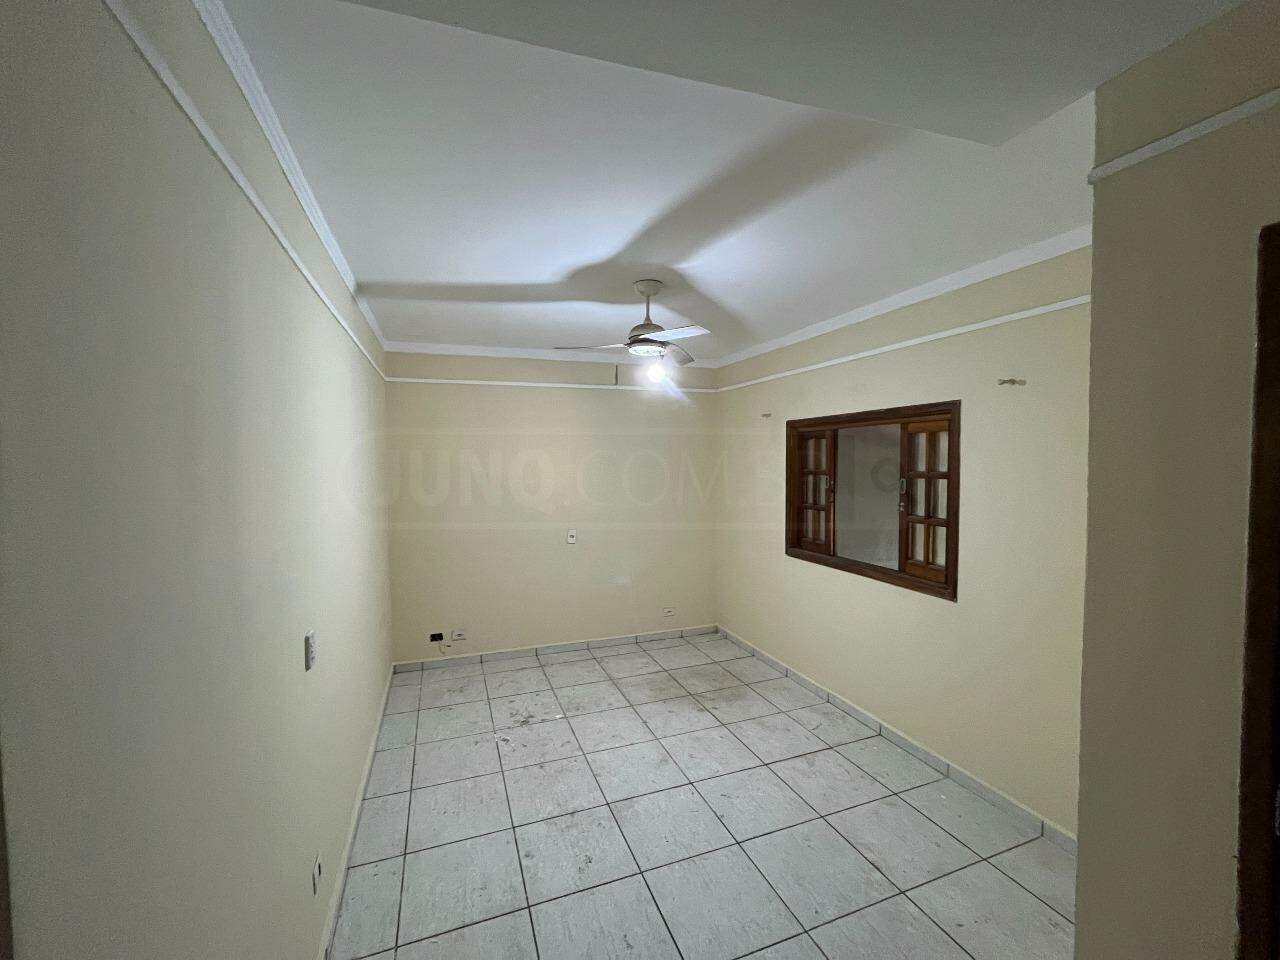 Casa à venda, 3 quartos, sendo 1 suíte, 2 vagas, no bairro Jardim Brasília em Piracicaba - SP